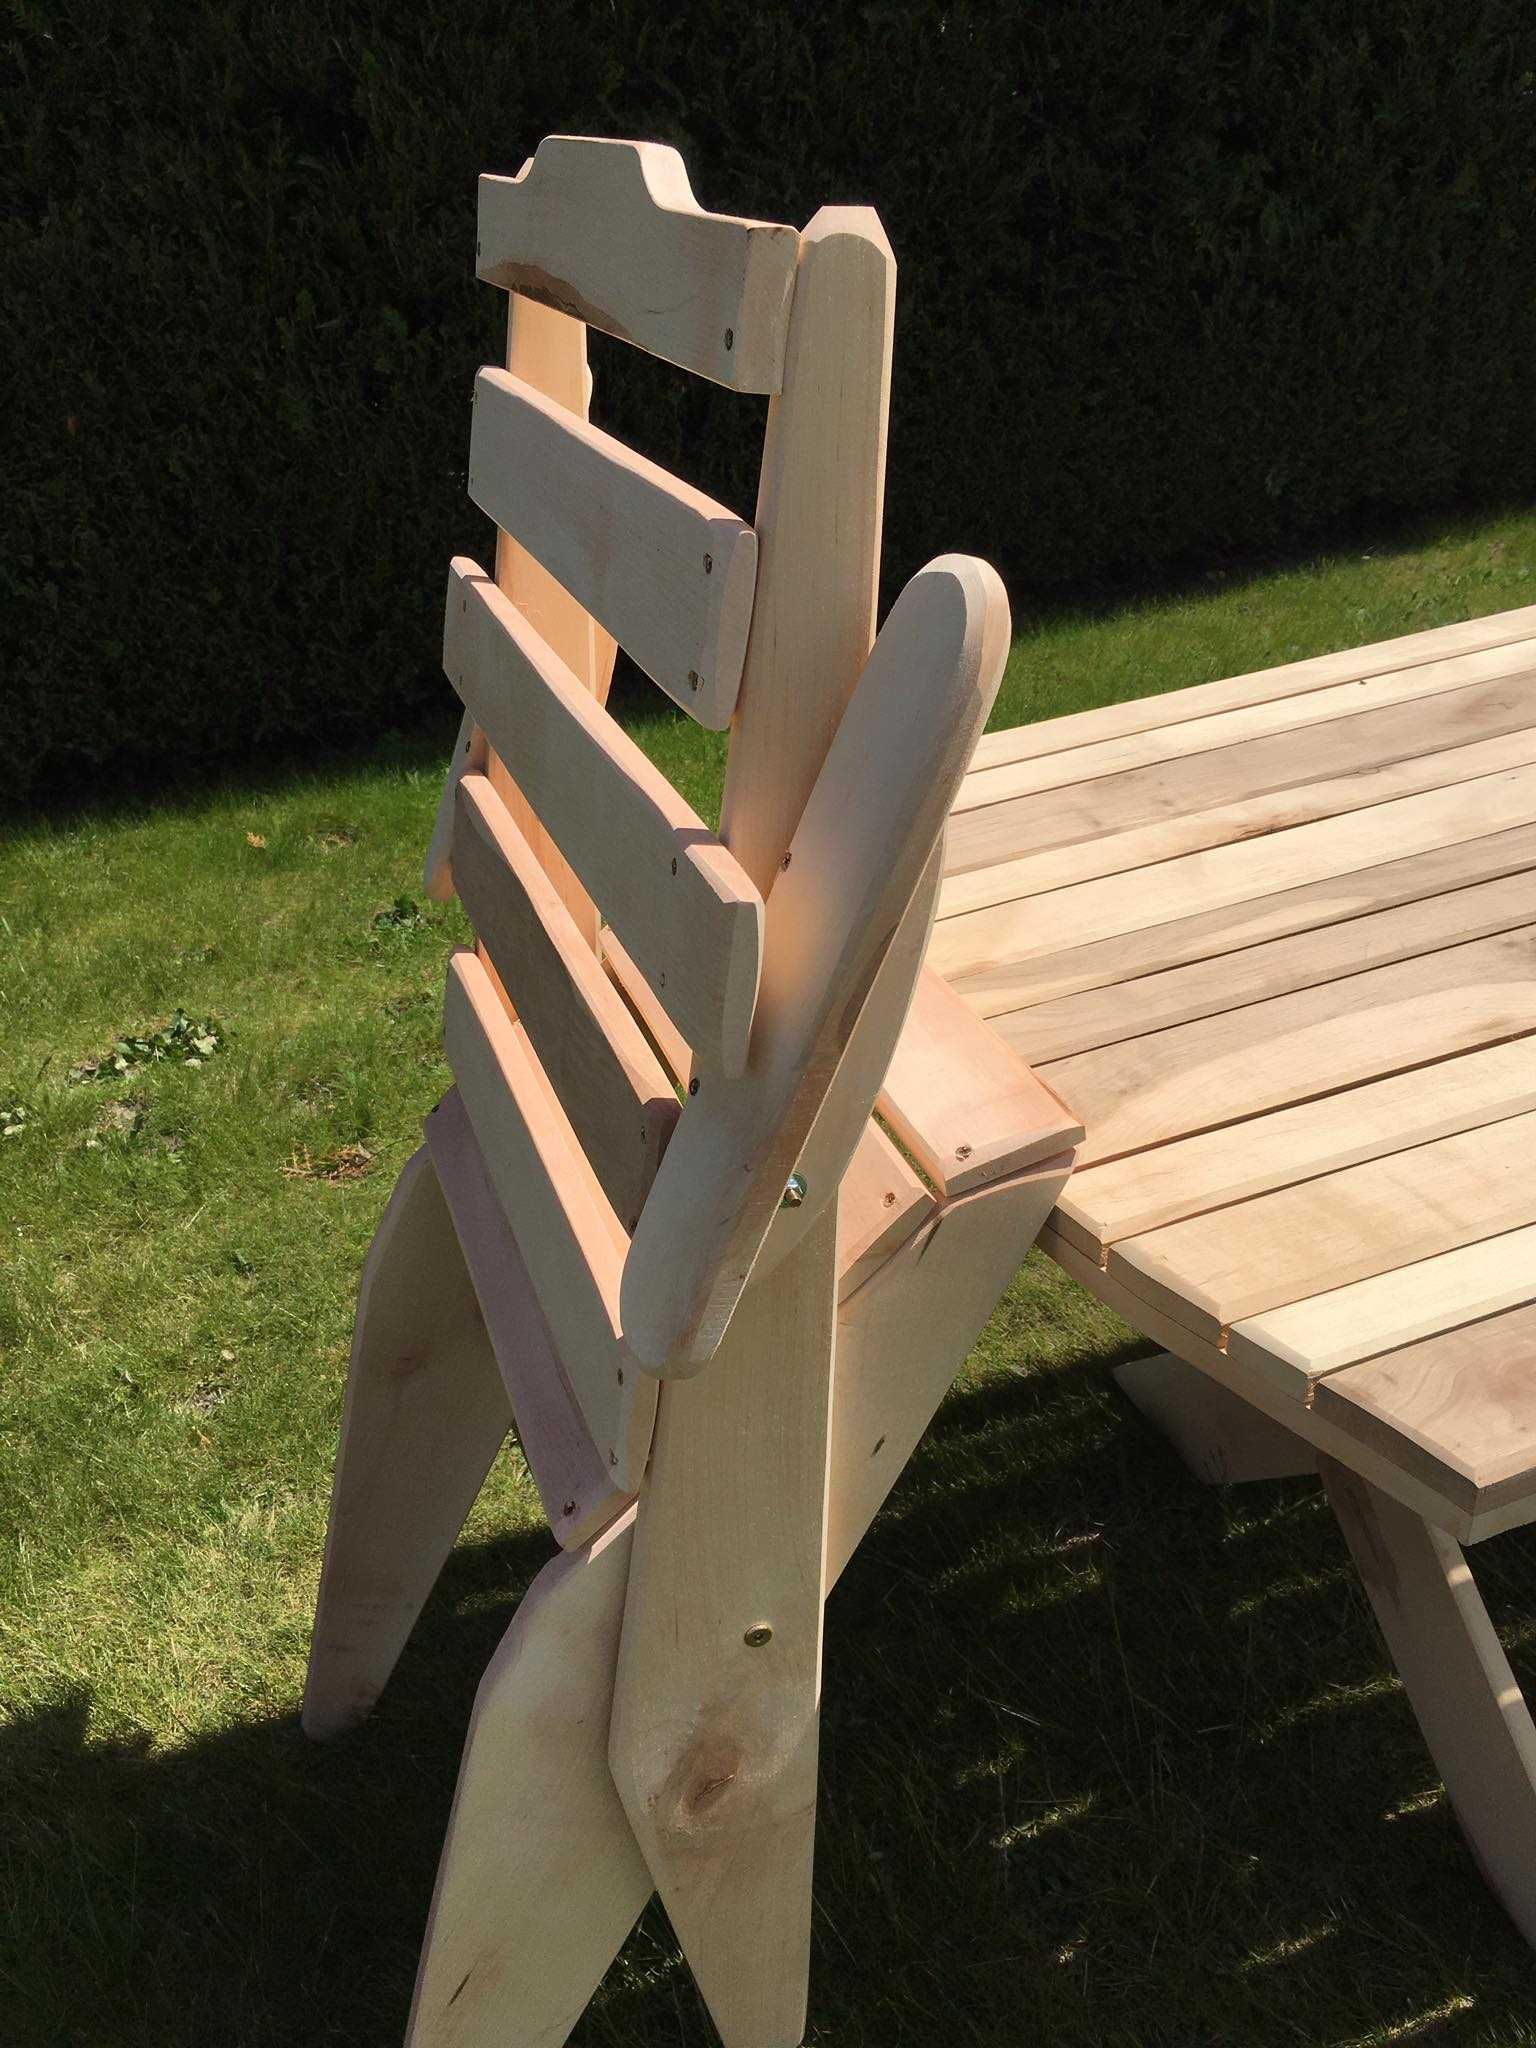 Składane meble ogrodowe drewno olchowe PRODUCENT 8 Krzeseł Stół 200 cm